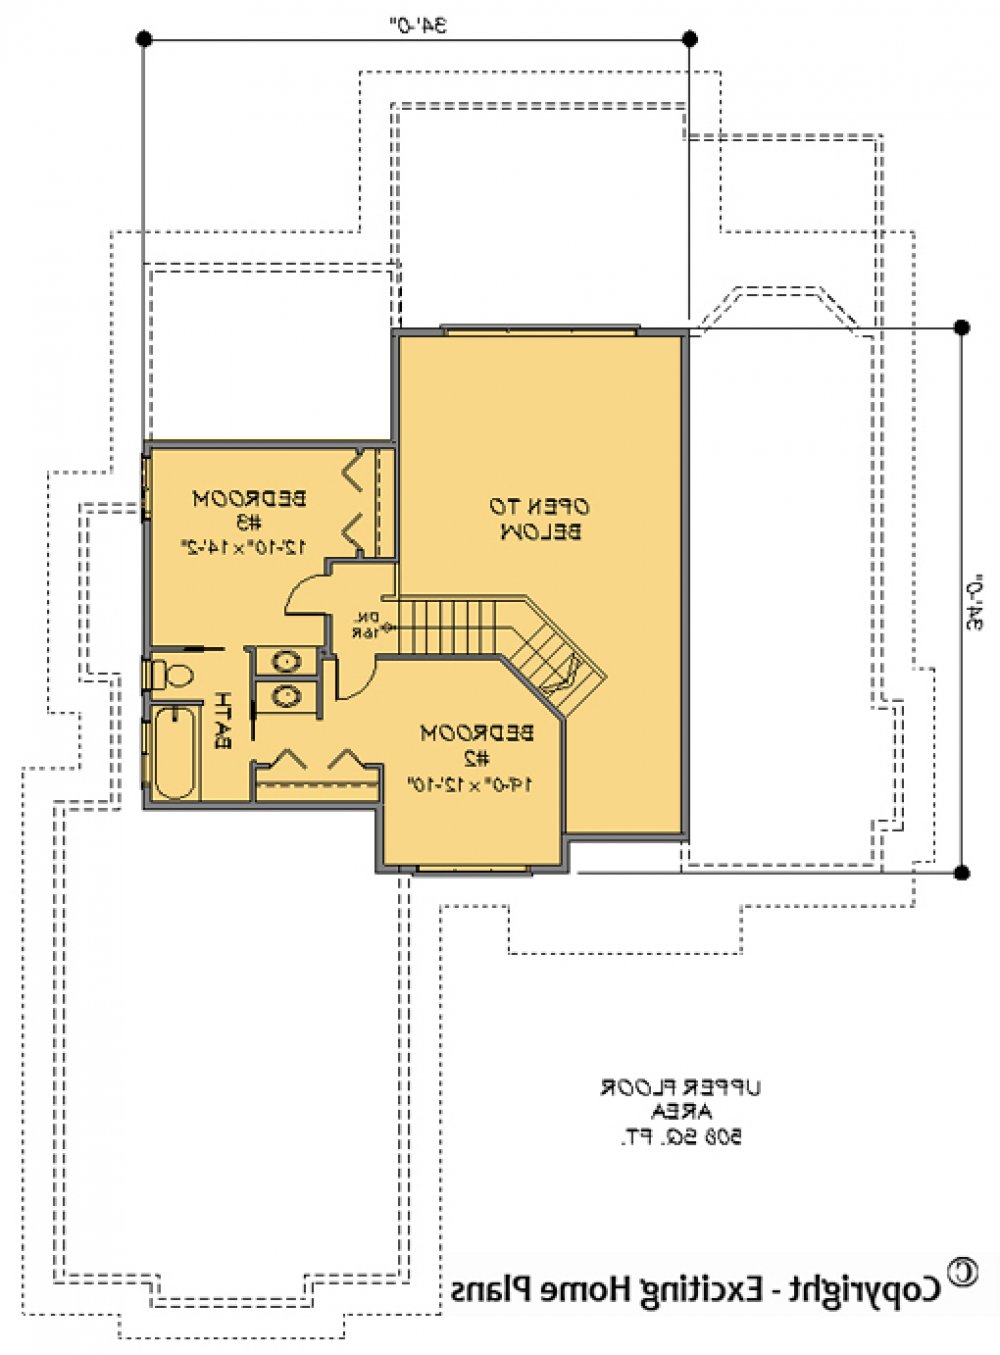 House Plan E1063-10 Upper Floor Plan REVERSE